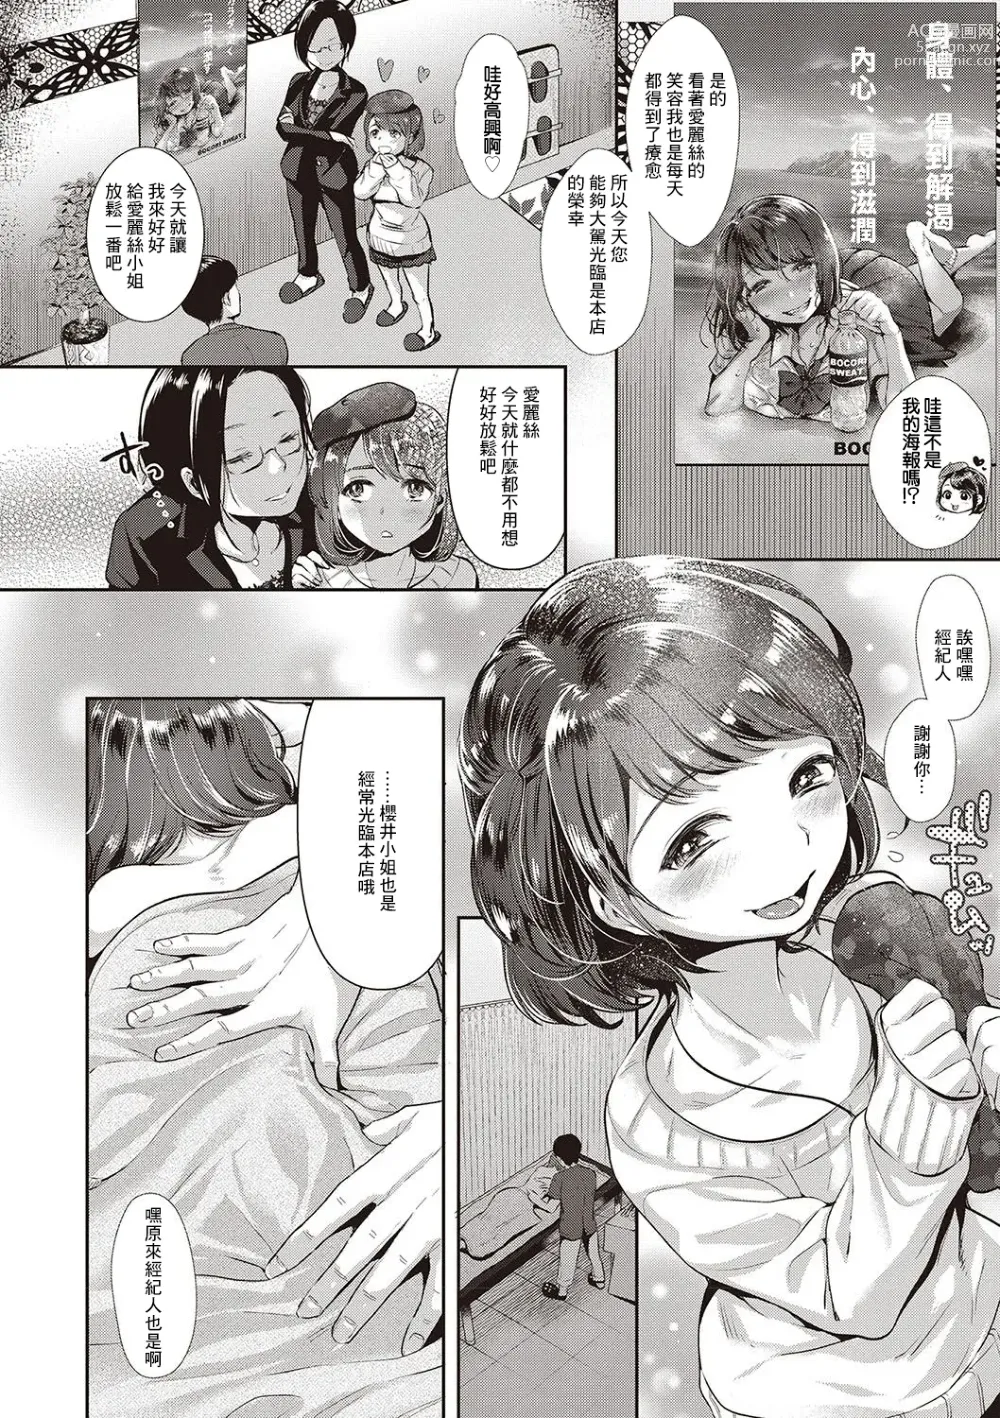 Page 4 of manga Idol Trap!